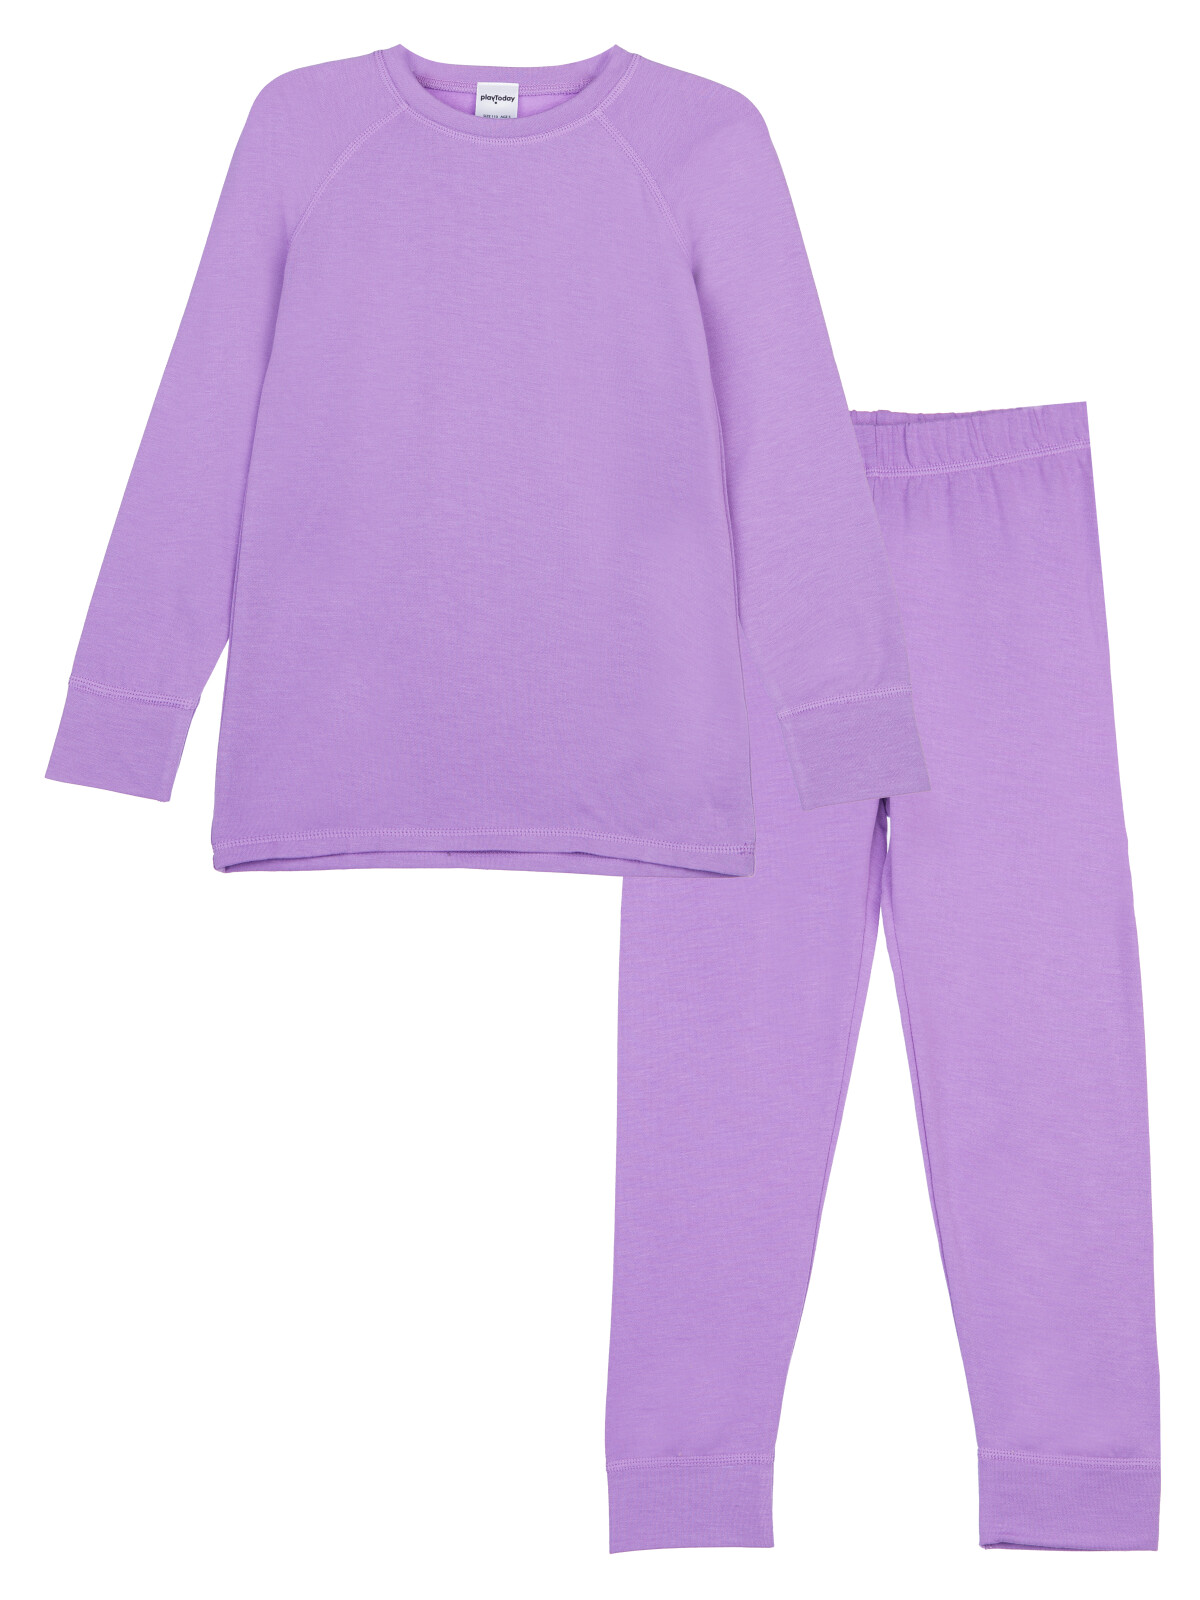 Термокомплект для девочек PlayToday: брюки, толстовка, фиолетовый, 98